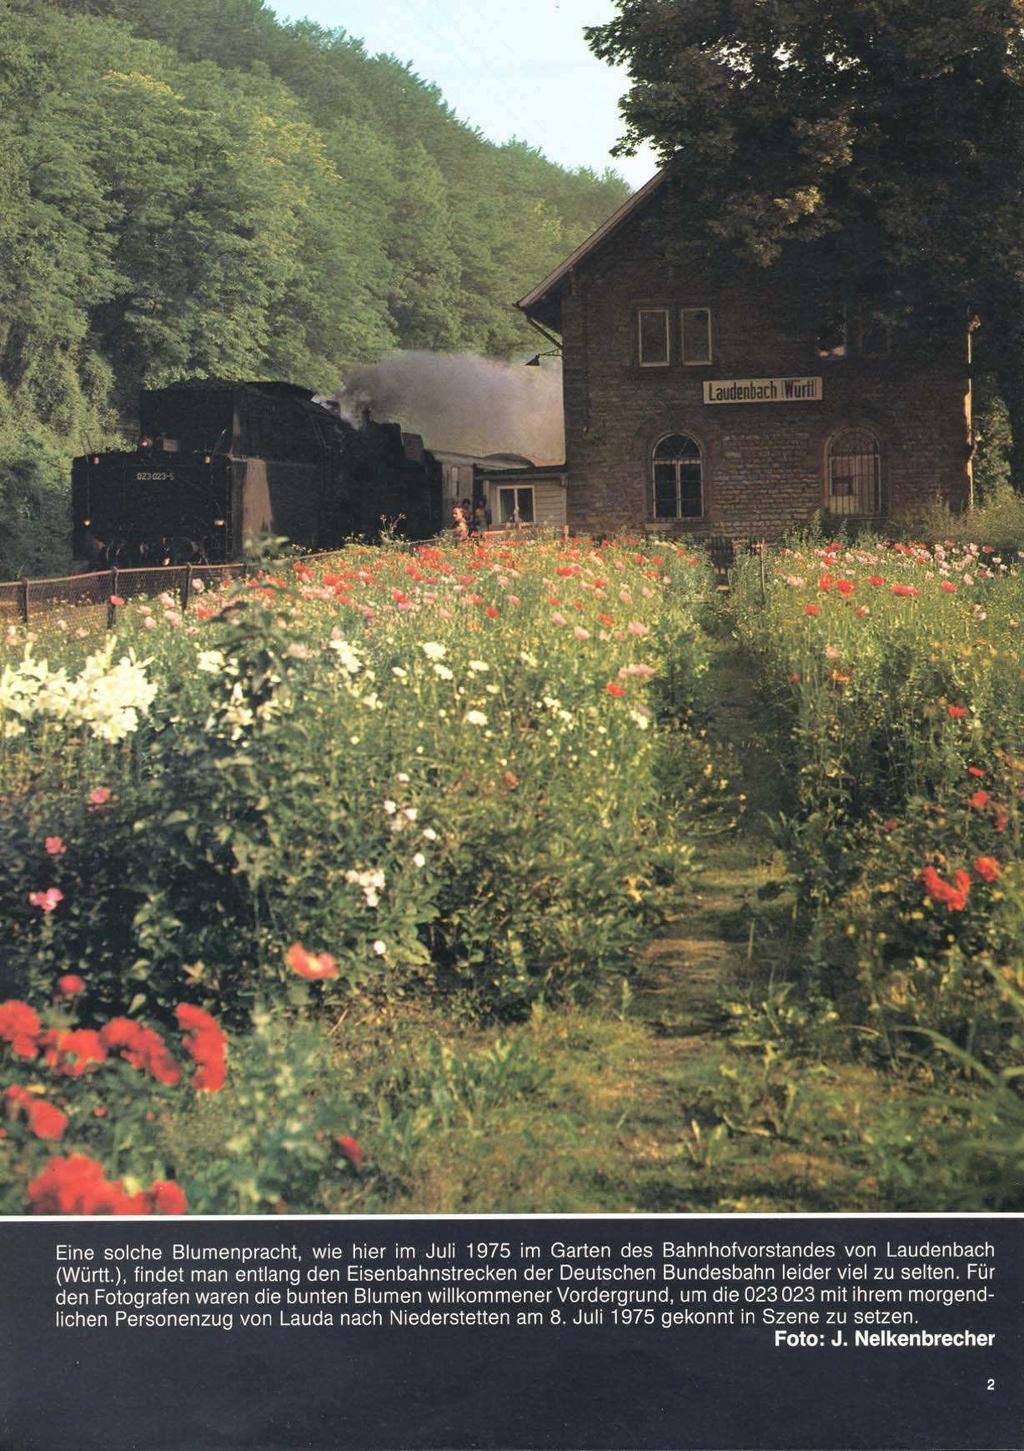 Eine solche Blumenpracht, wie hier im Juli 1975 im Garten des Bahnhofvorstandes von Laudenbach (Württ.), findet man entlang den Eisenbahnstrecken der Deutschen Bundesbahn leider viel zu selten.